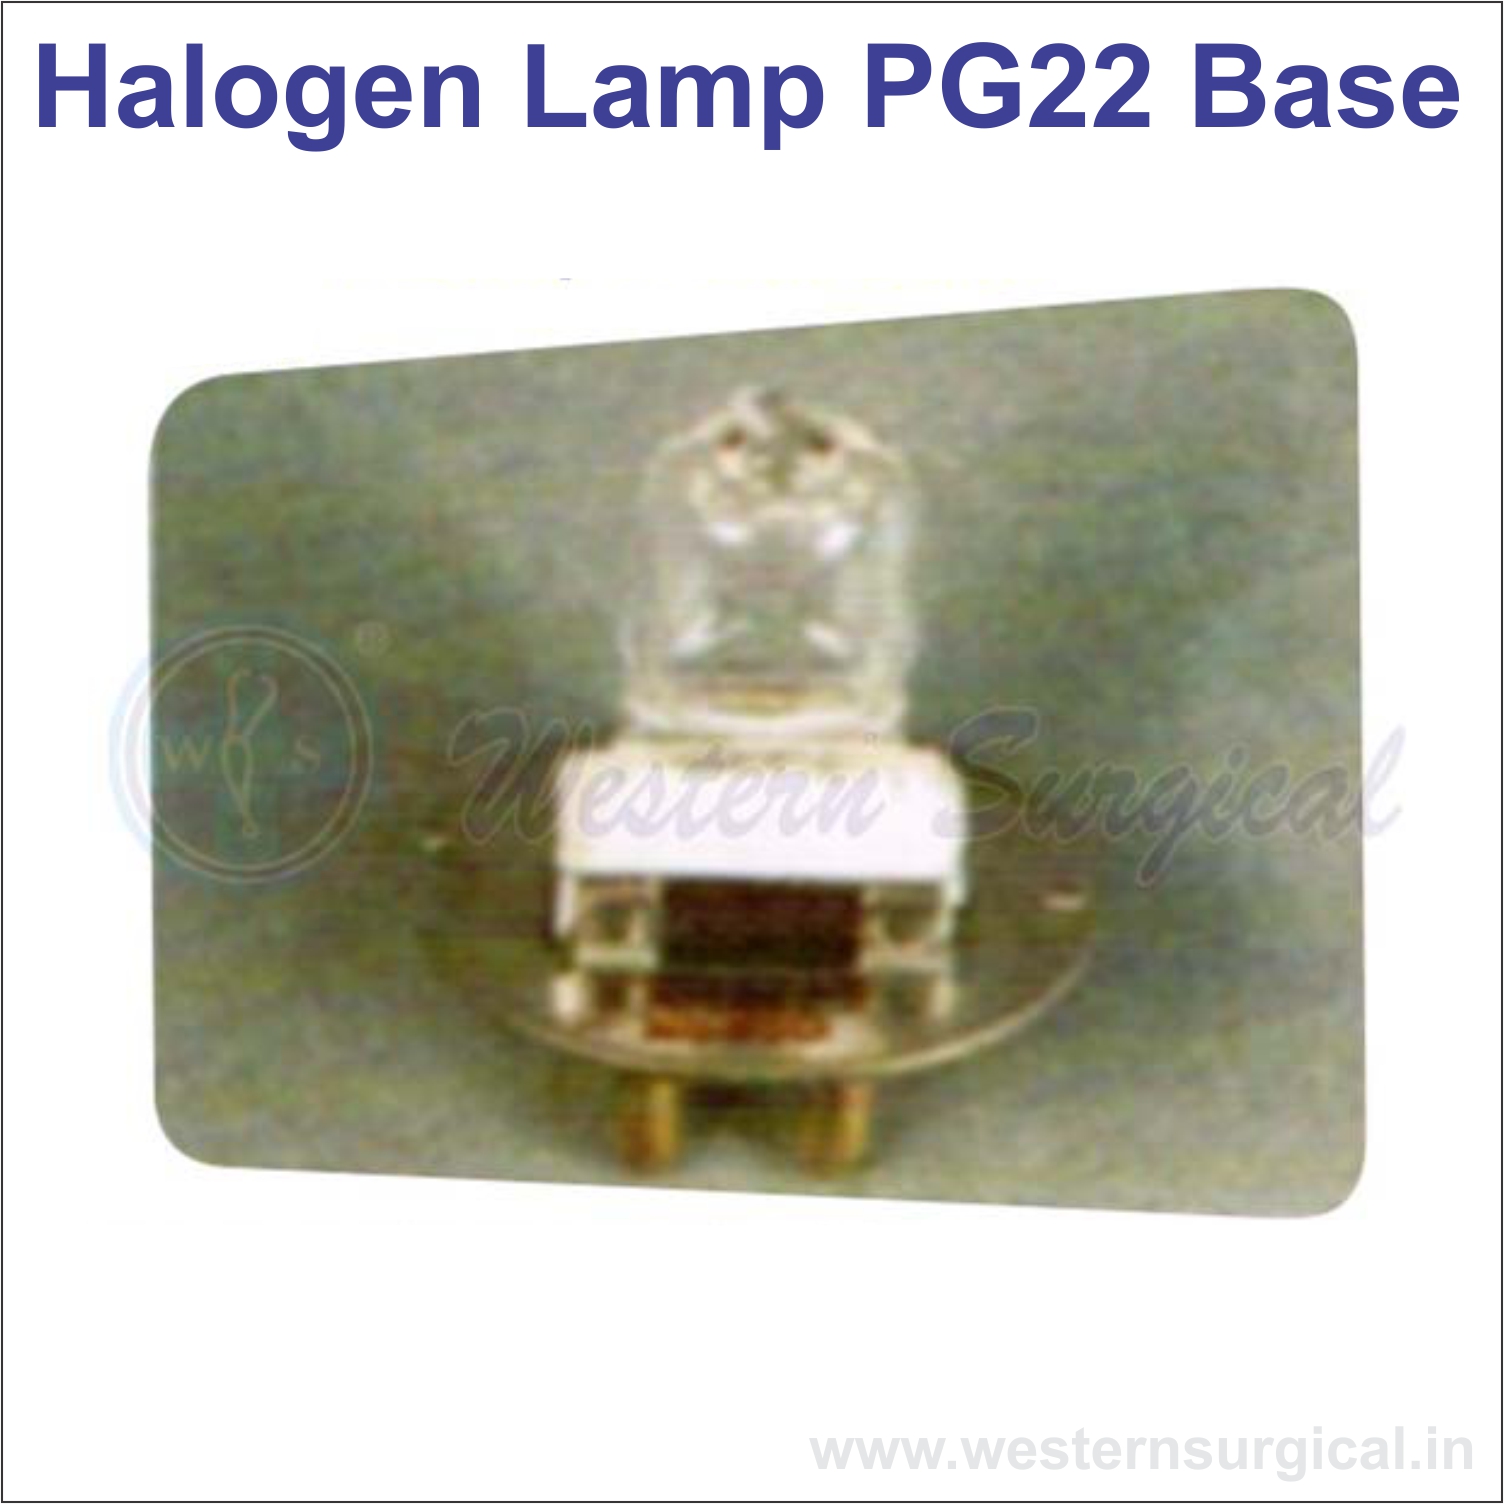 Halogen Lamp PG22 Base